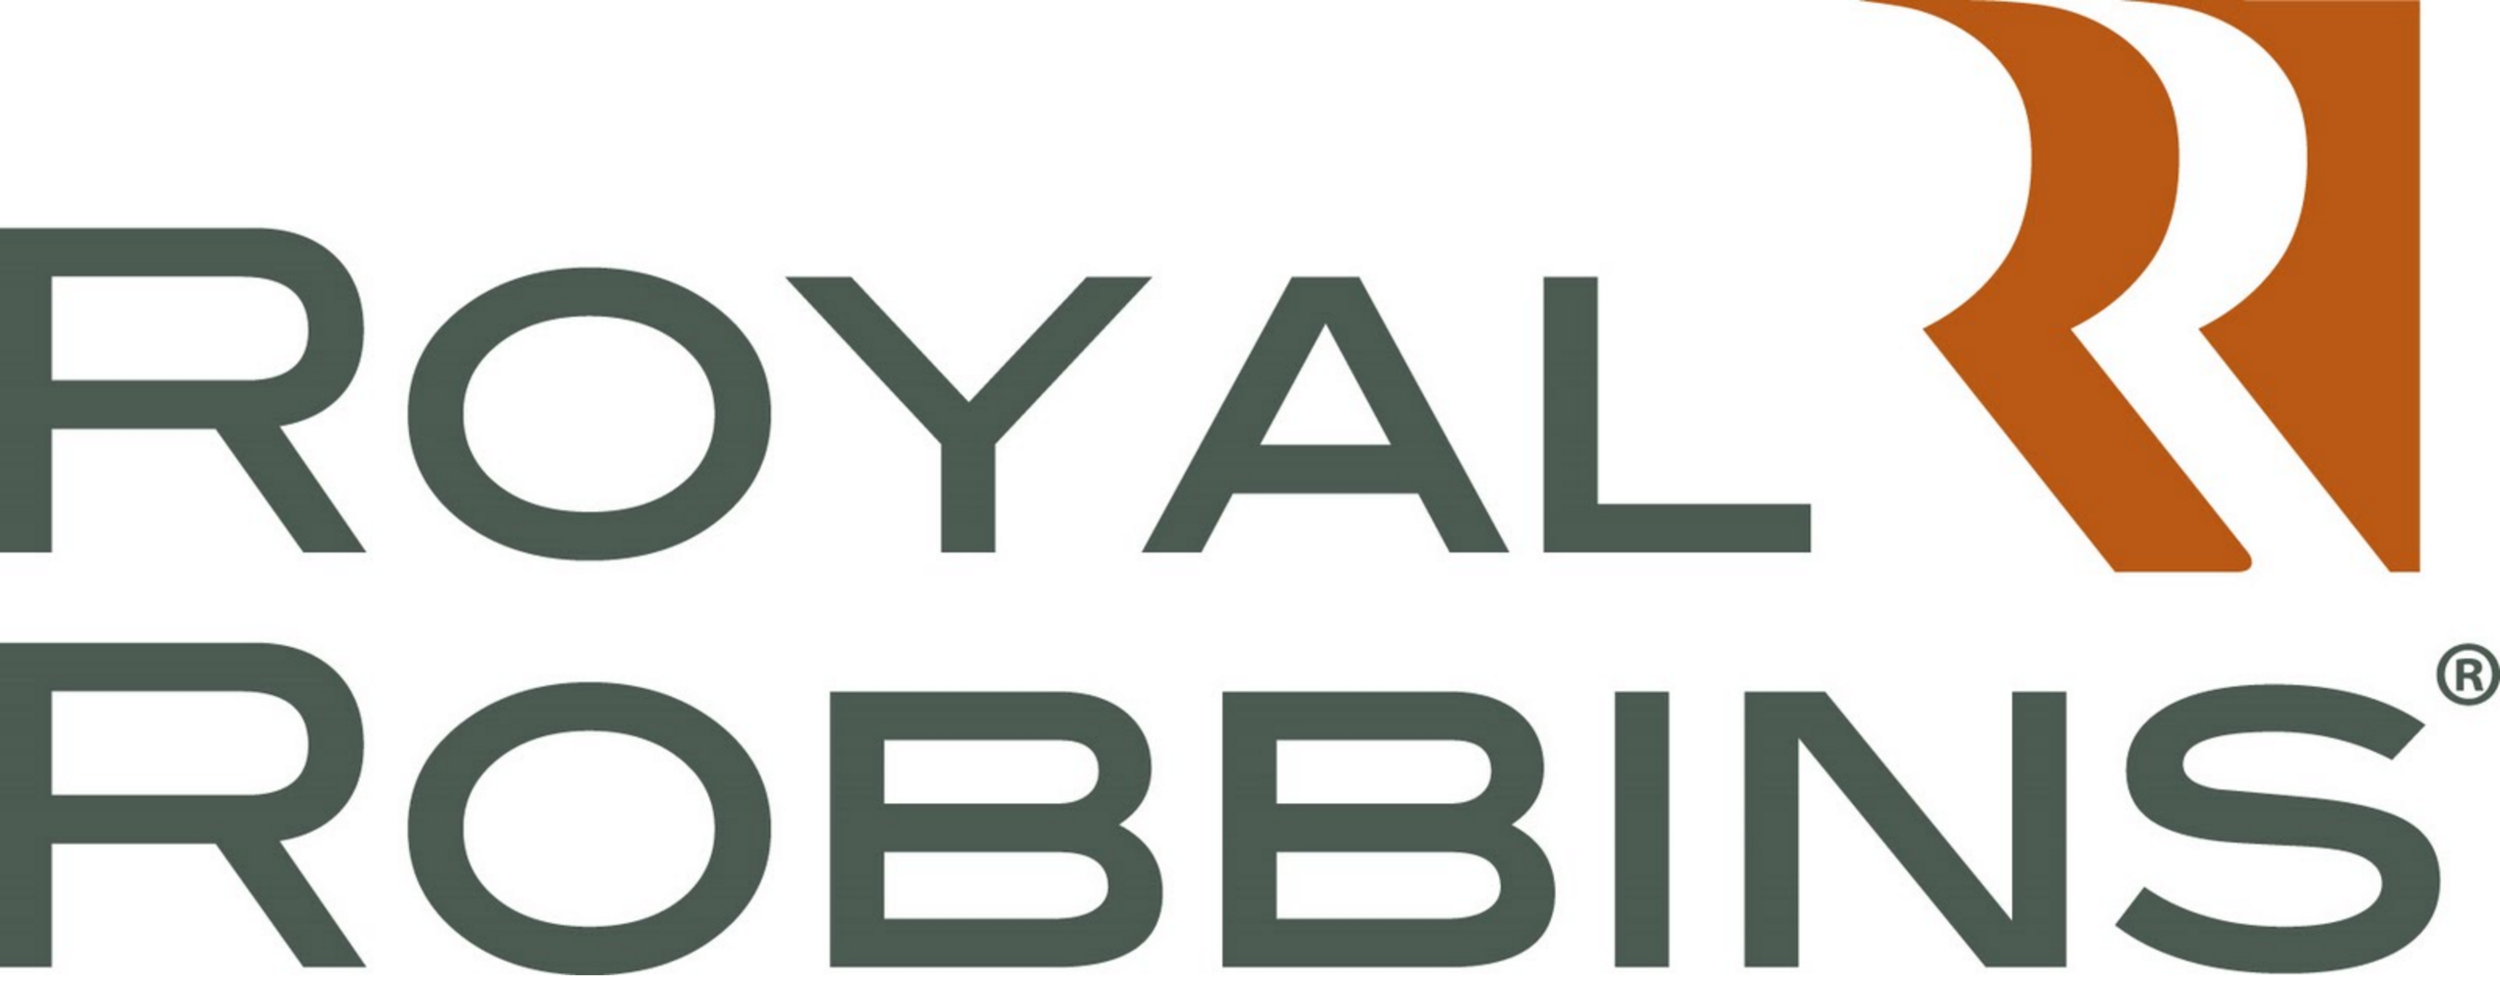 Royal-Robbins-logo.jpg.png